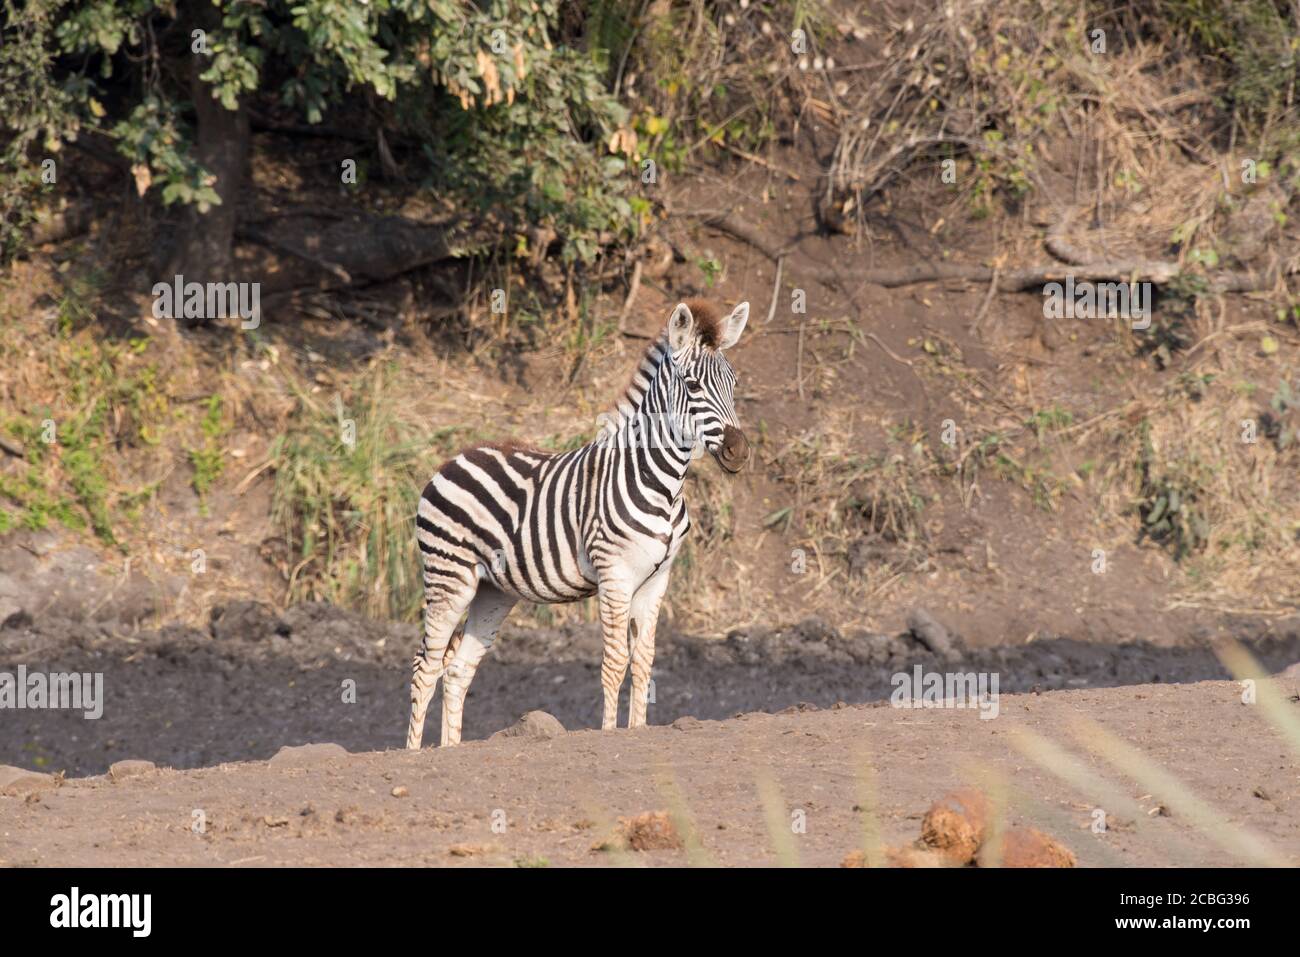 Zebra am schlammigen Wasserloch mit grünen Flusspflanzen und einer zebra steht starrend und stellt sicher, dass keine Gefahr näher kommt Stockfoto